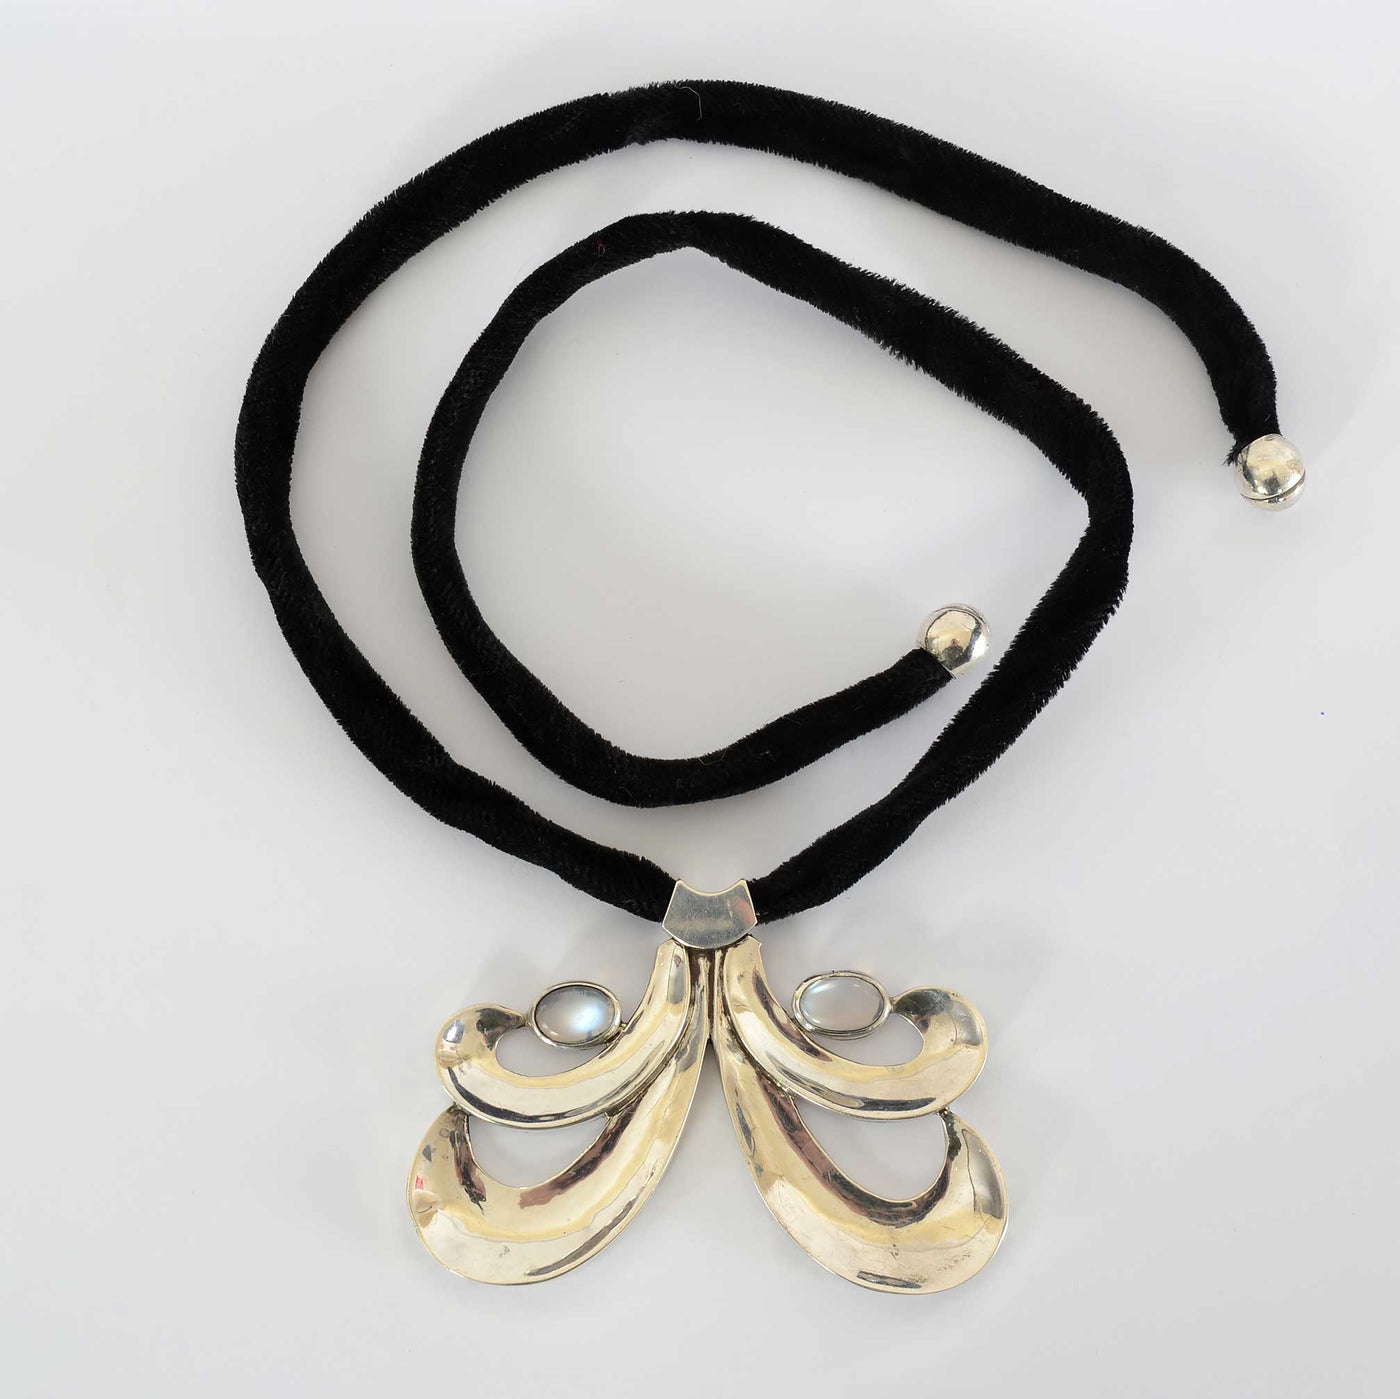 antonio-pineda-silver-moonstone-pendant-necklace-1436597